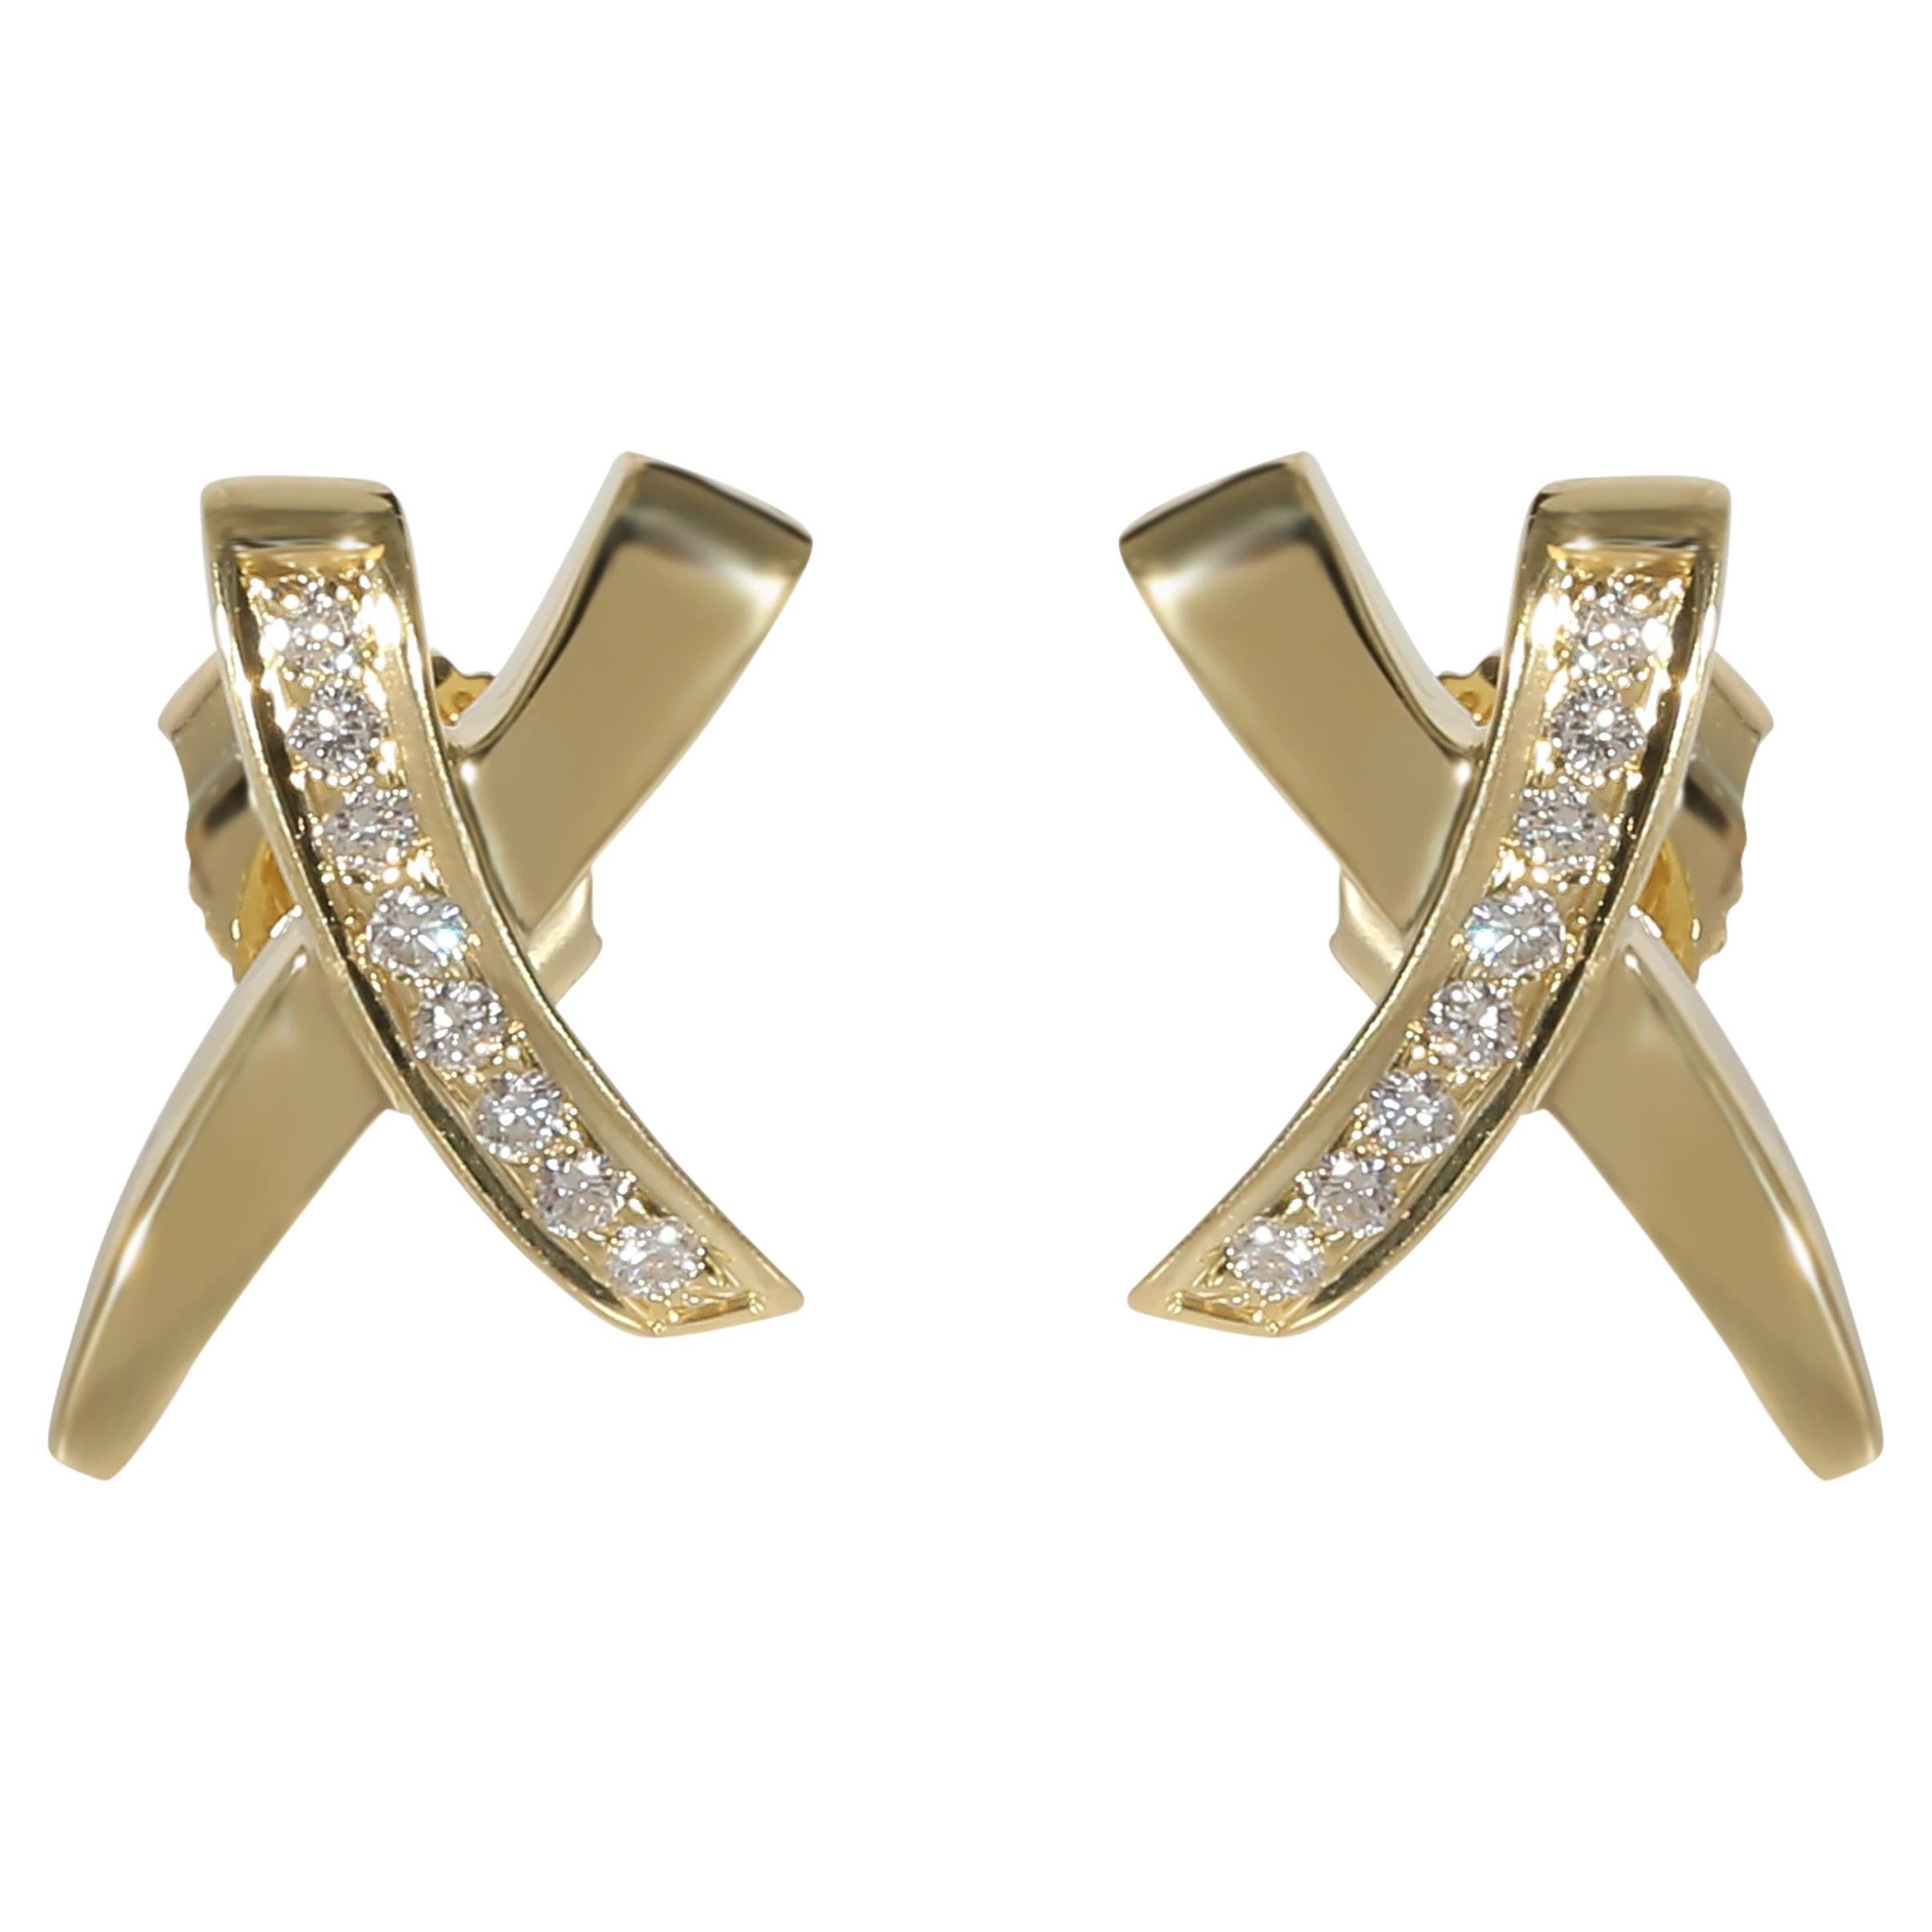 Tiffany & Co. Boucles d'oreilles Paloma Picasso X Graffiti en or jaune 18 carats avec diamants 0,1 carat